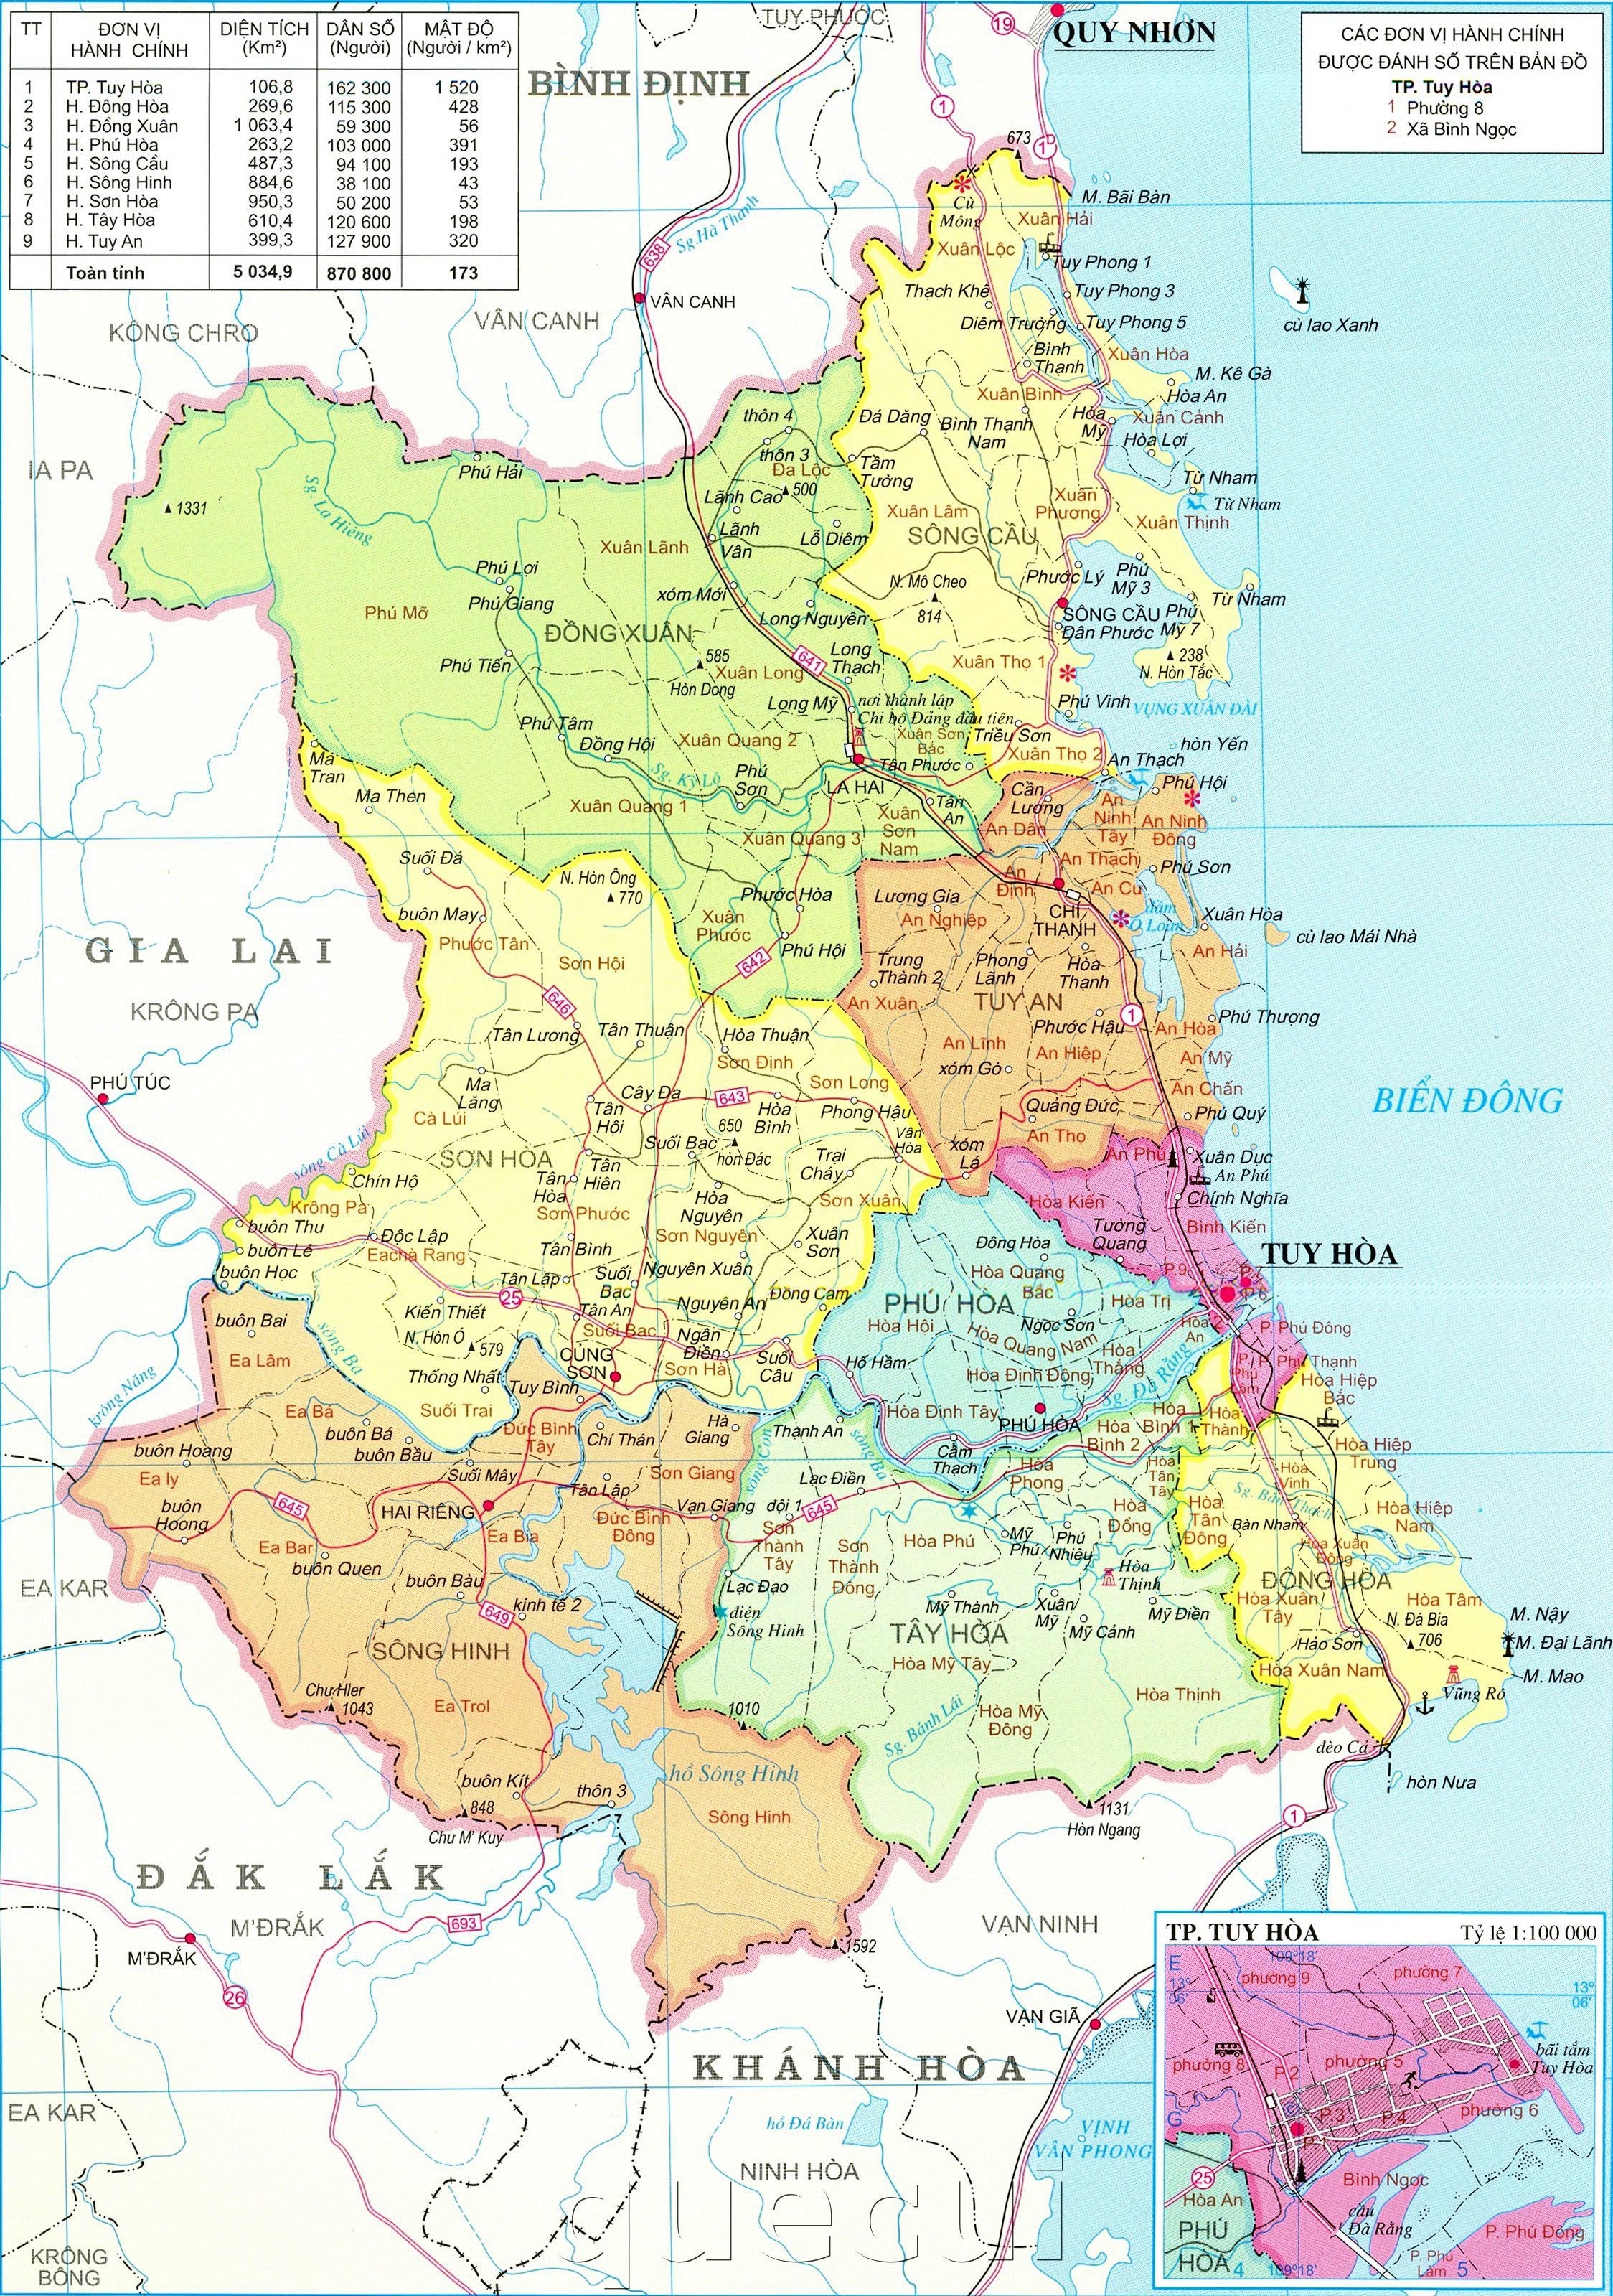 Đến với bản đồ hành chính huyện Phù Yên Sơn La là cơ hội để bạn trải nghiệm những điều mới lạ và thú vị. Cùng với những cảnh quan hùng vĩ, những bản nhạc dân tộc trong trẻo và món ăn ngon miệng, bạn chắc chắn sẽ có những trải nghiệm tuyệt vời. Qua hình ảnh, chúng tôi sẽ giúp bạn có được cái nhìn sâu sắc hơn về vẻ đẹp của đất nước này.